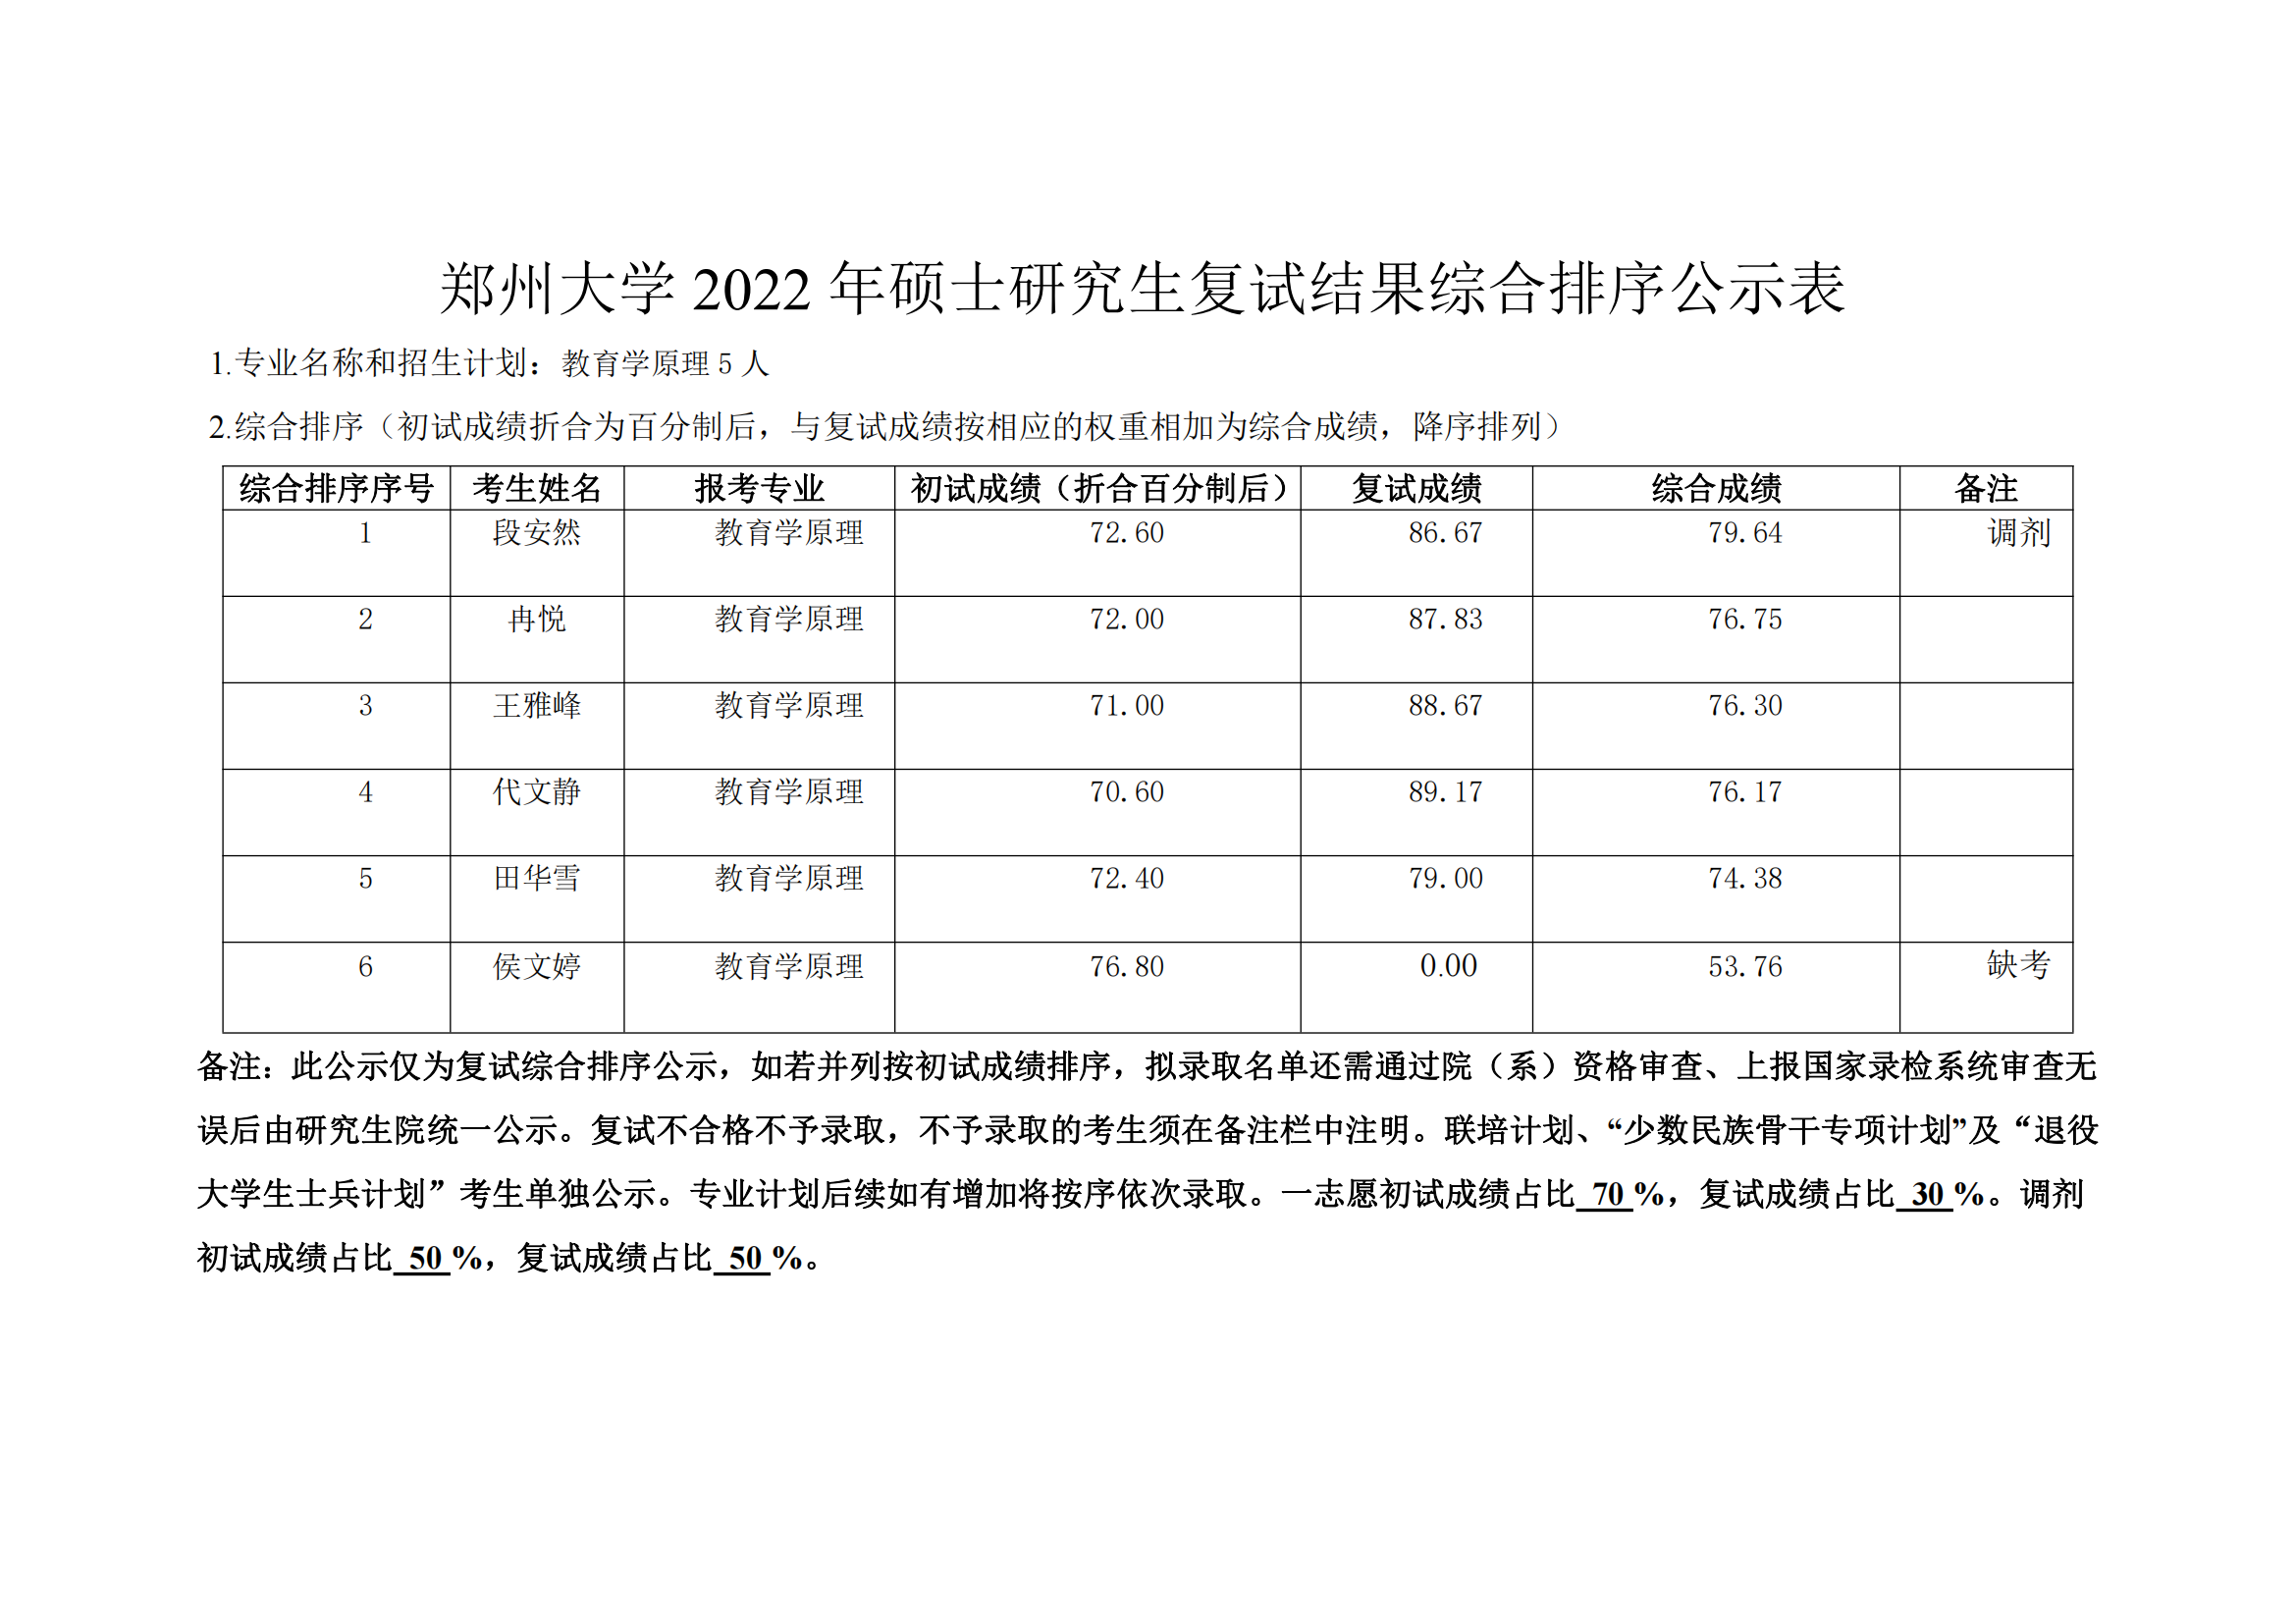 郑州大学教育学院2022年硕士研究生复试结果综合排序公示表_04.png